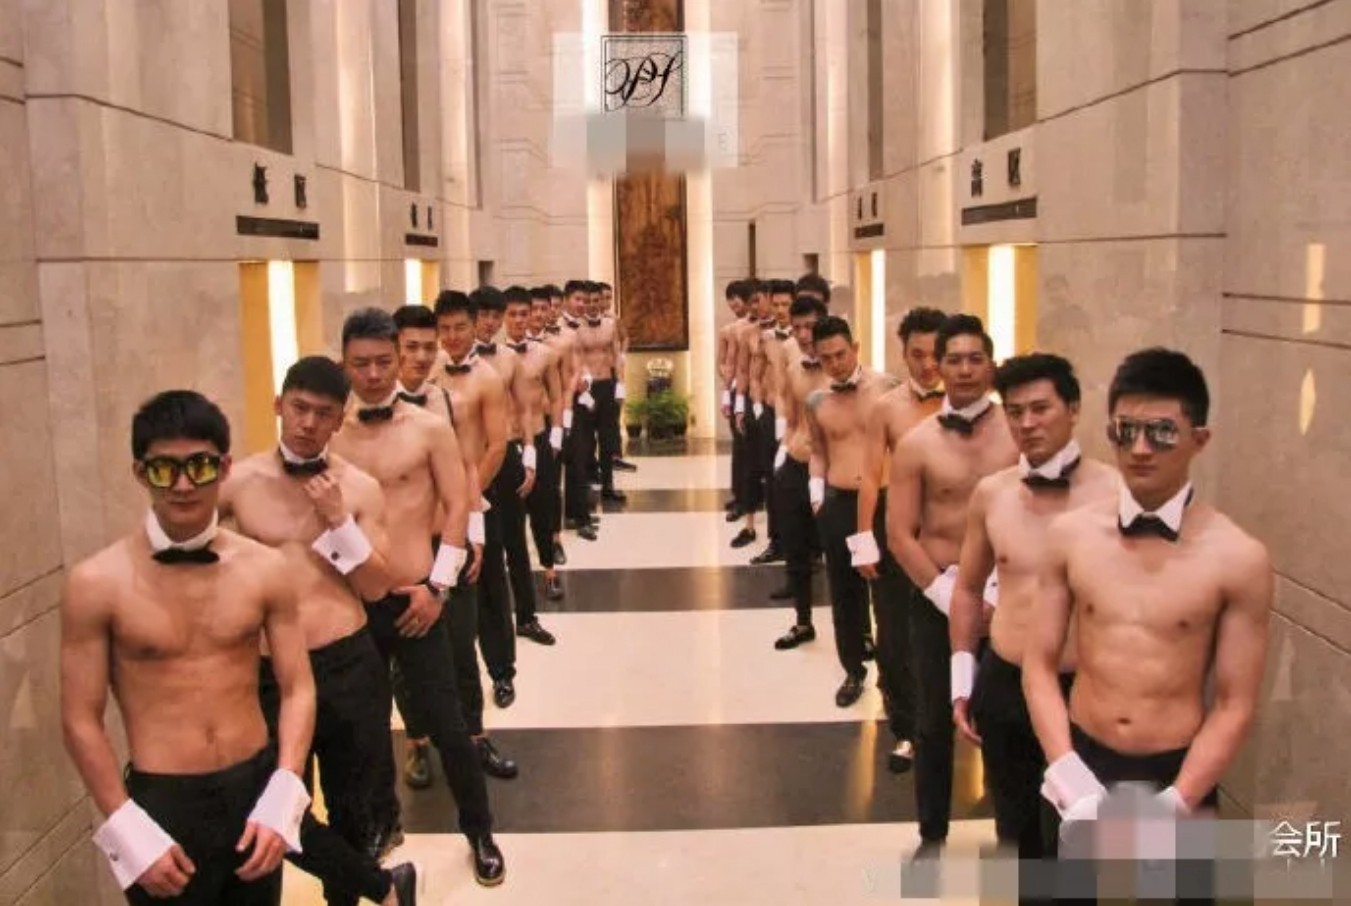 bdsm escort gay Chengdu China